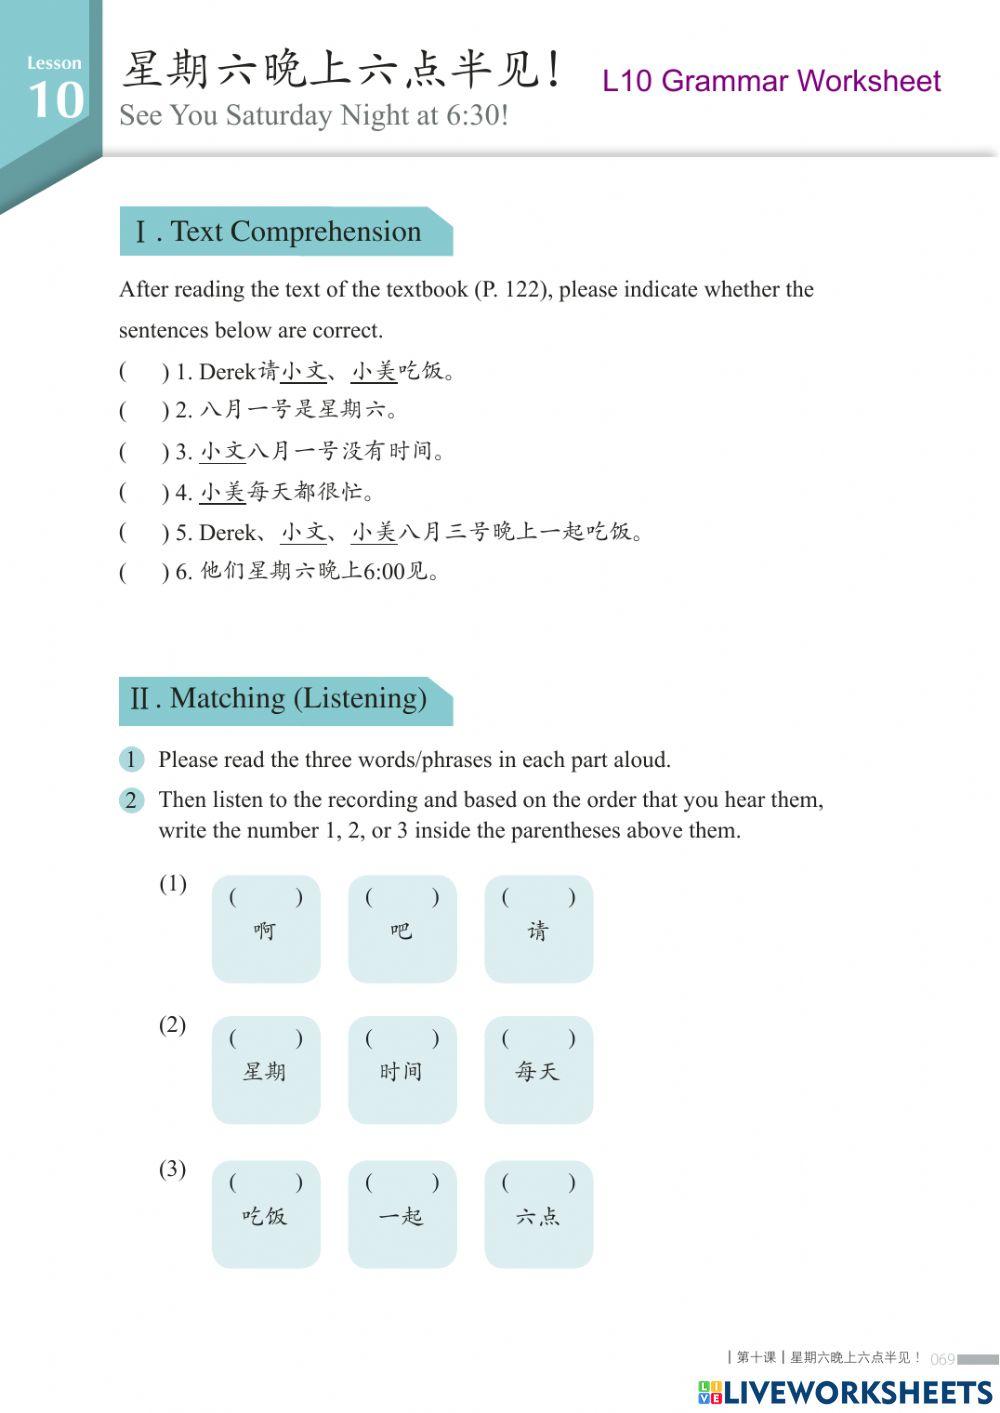 MTC - L10 Grammar Worksheet